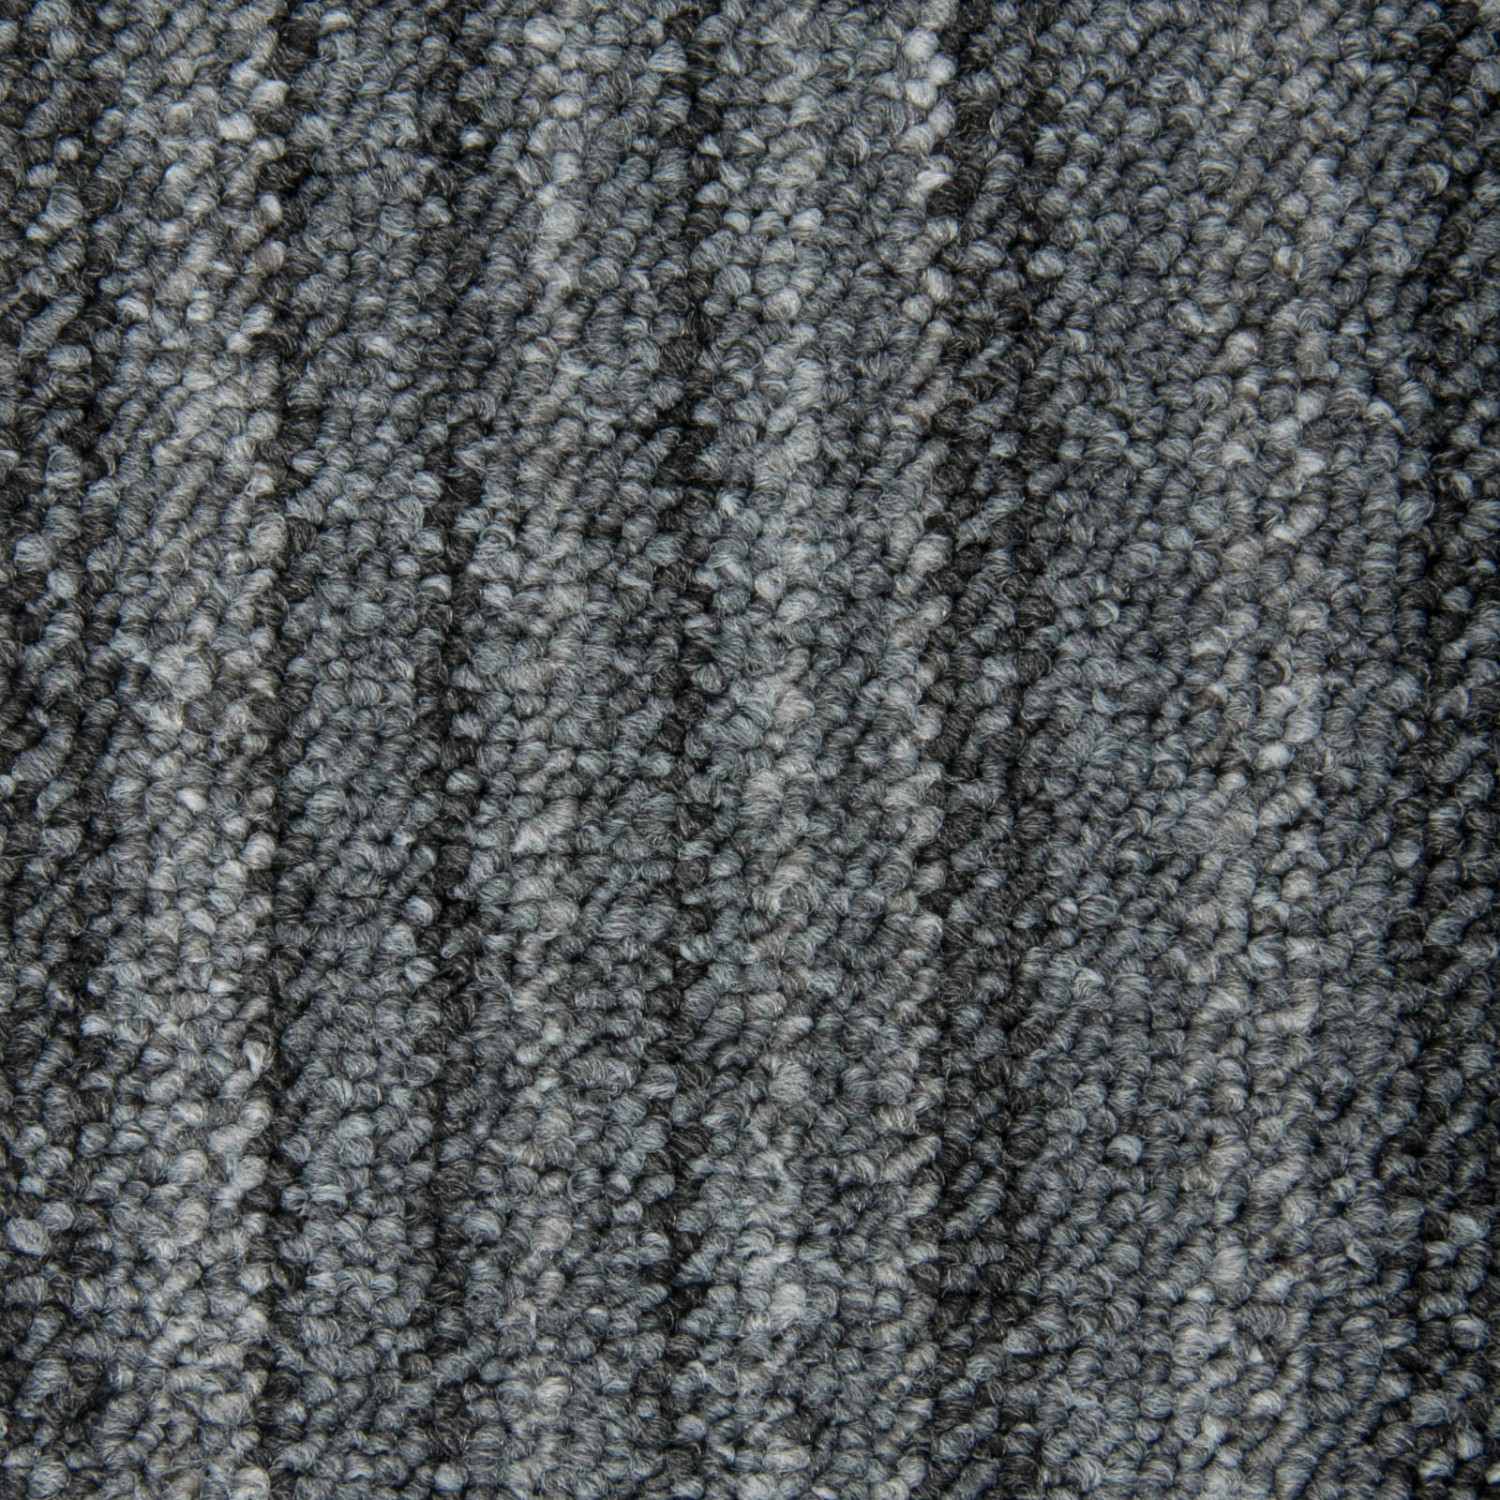 Schatex Teppichdielen Selbstliegend Schatex Schlingenteppich In Grau Als Fliesen In 25x100 Cm Schlingen Teppich Dielen Ideal Für Esszimmer Und Büro von Schatex